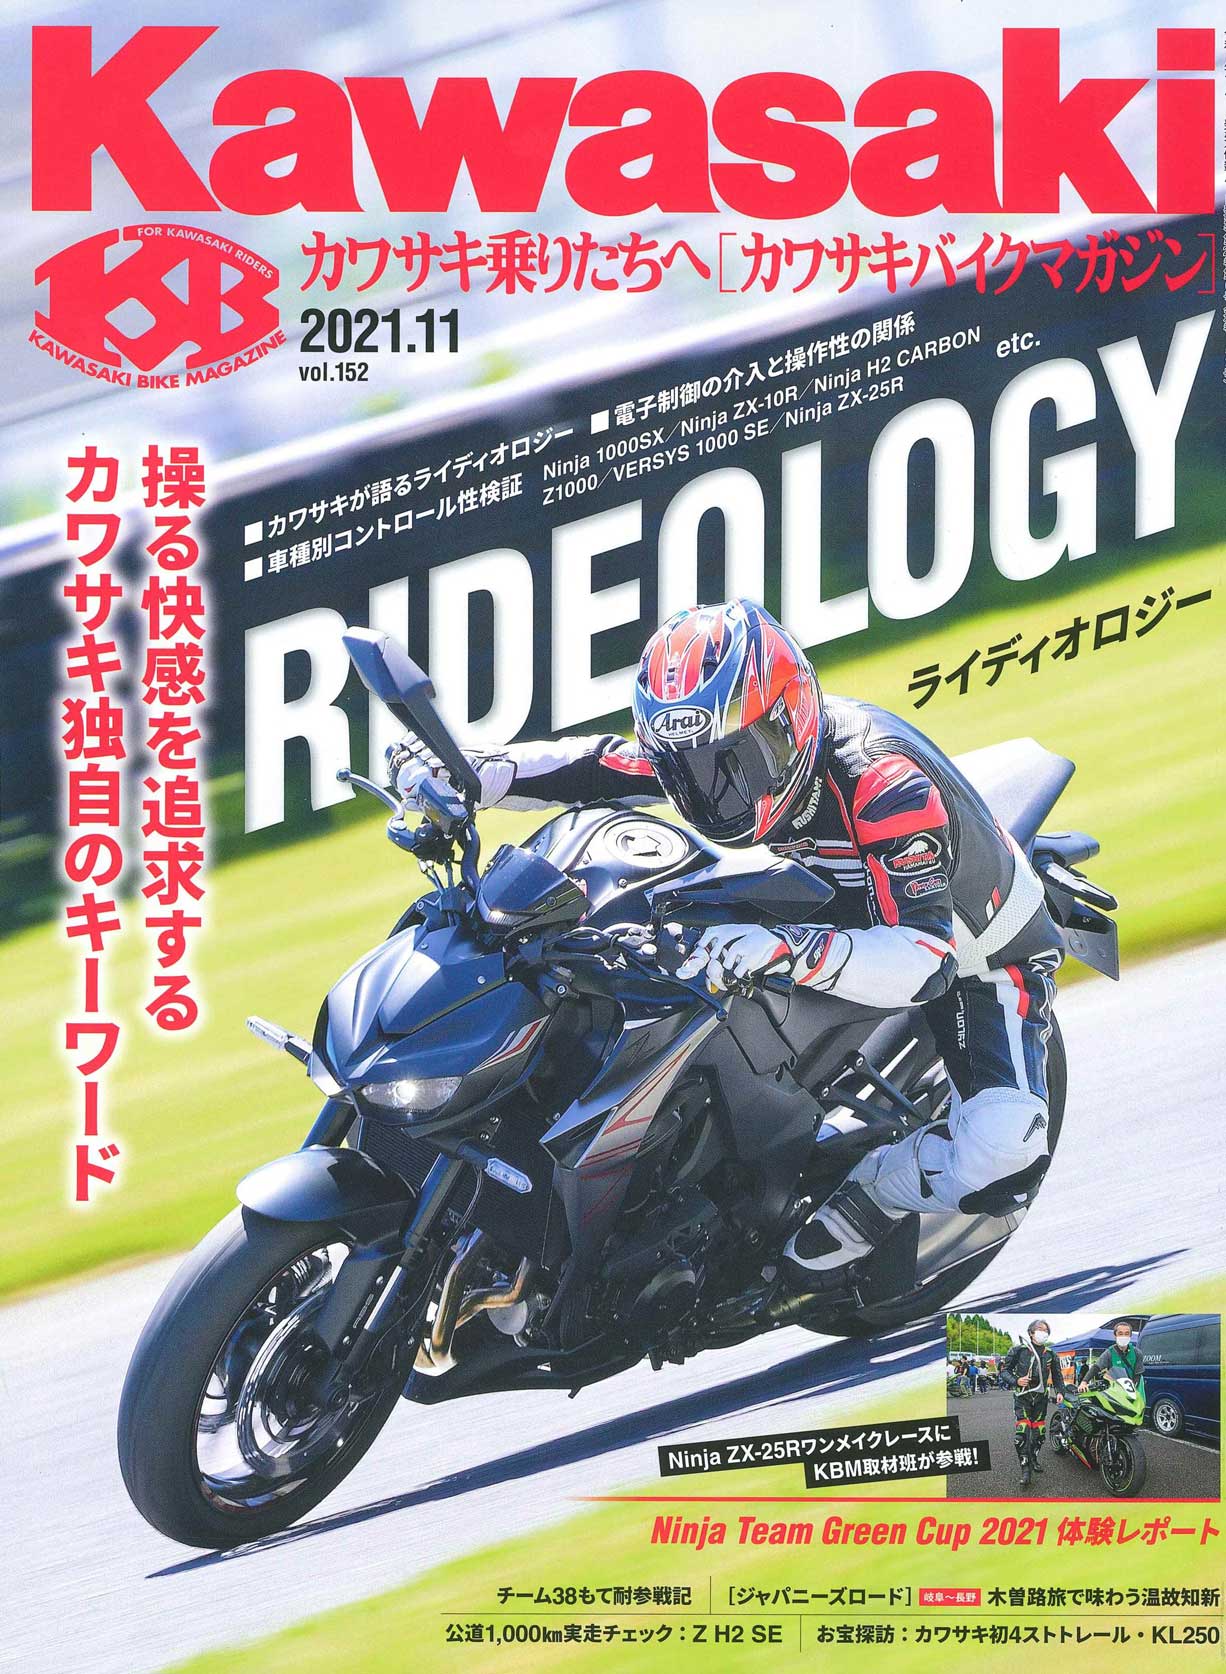 【カワサキバイクマガジン 2021年11月号掲載】バイク用スマホホルダー「MOUNT SYSTEM」